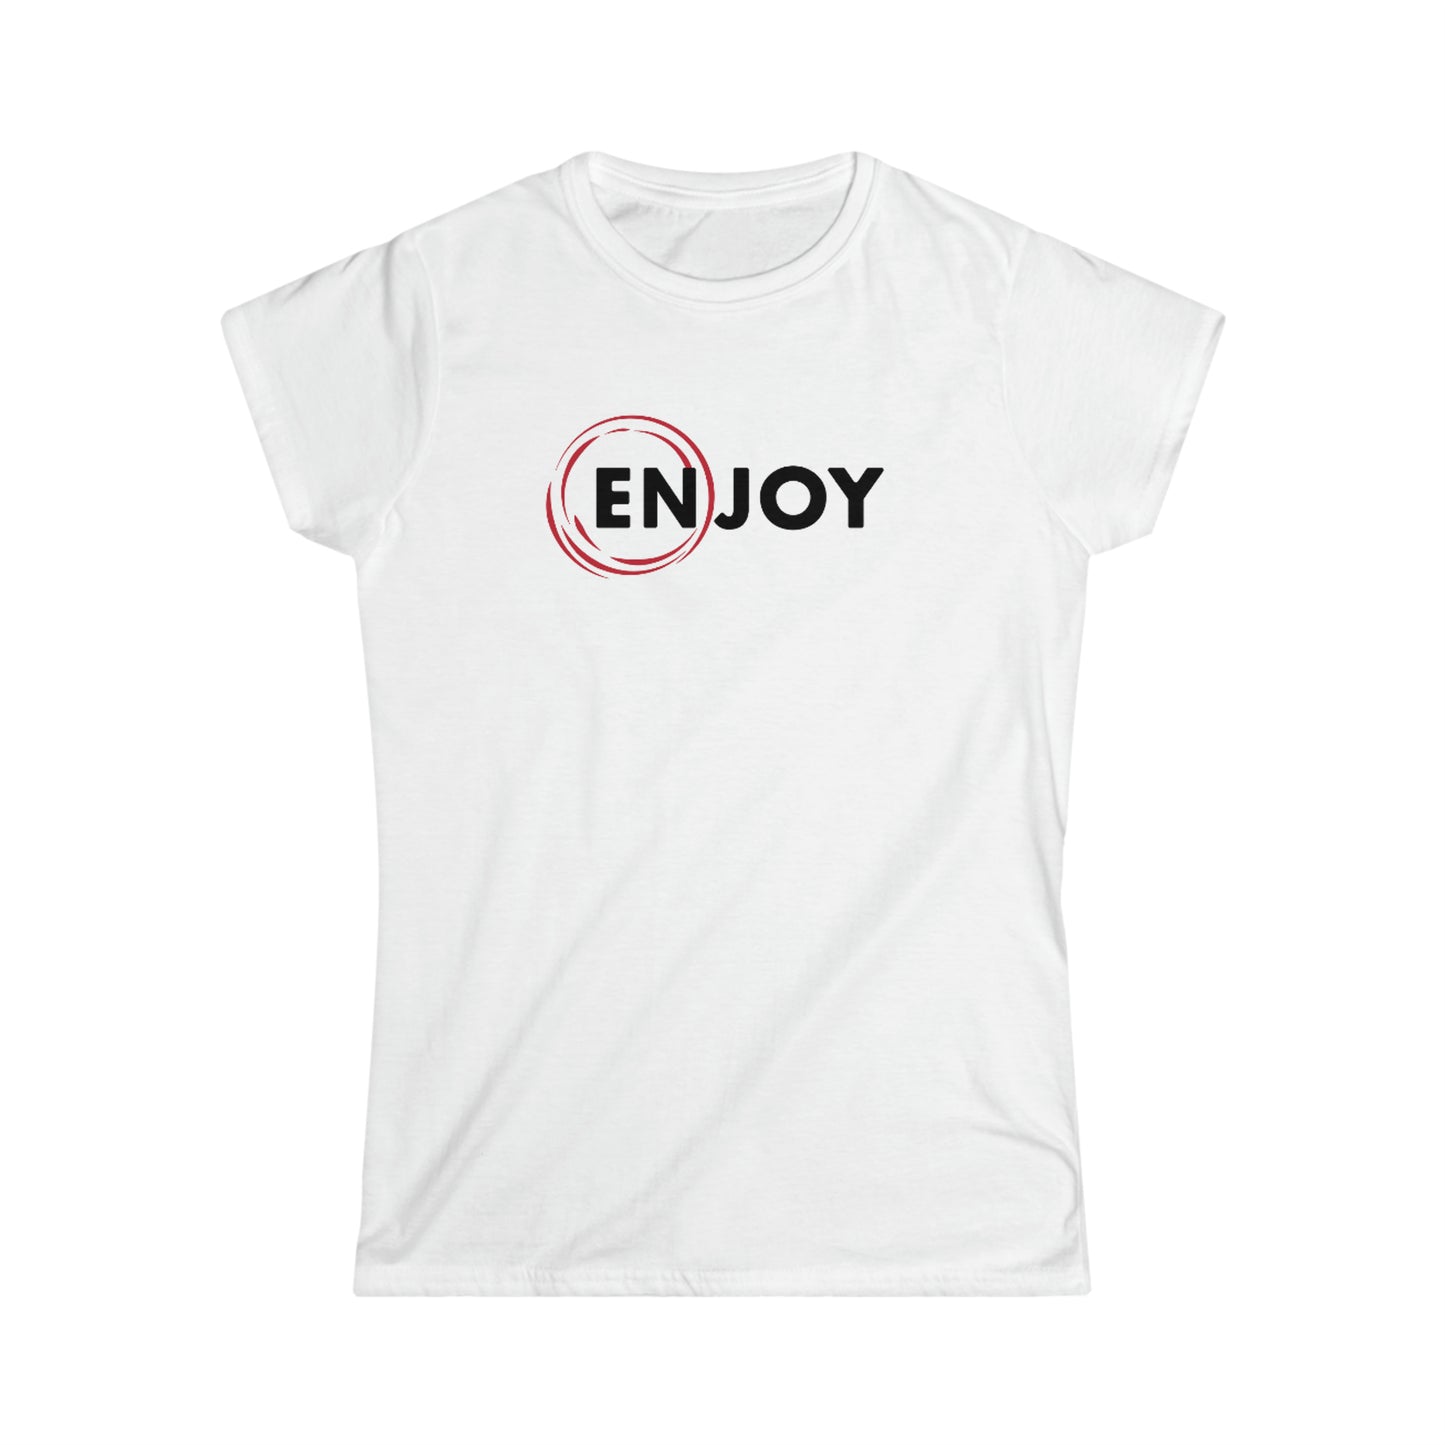 Women's ENJOY T-shirt